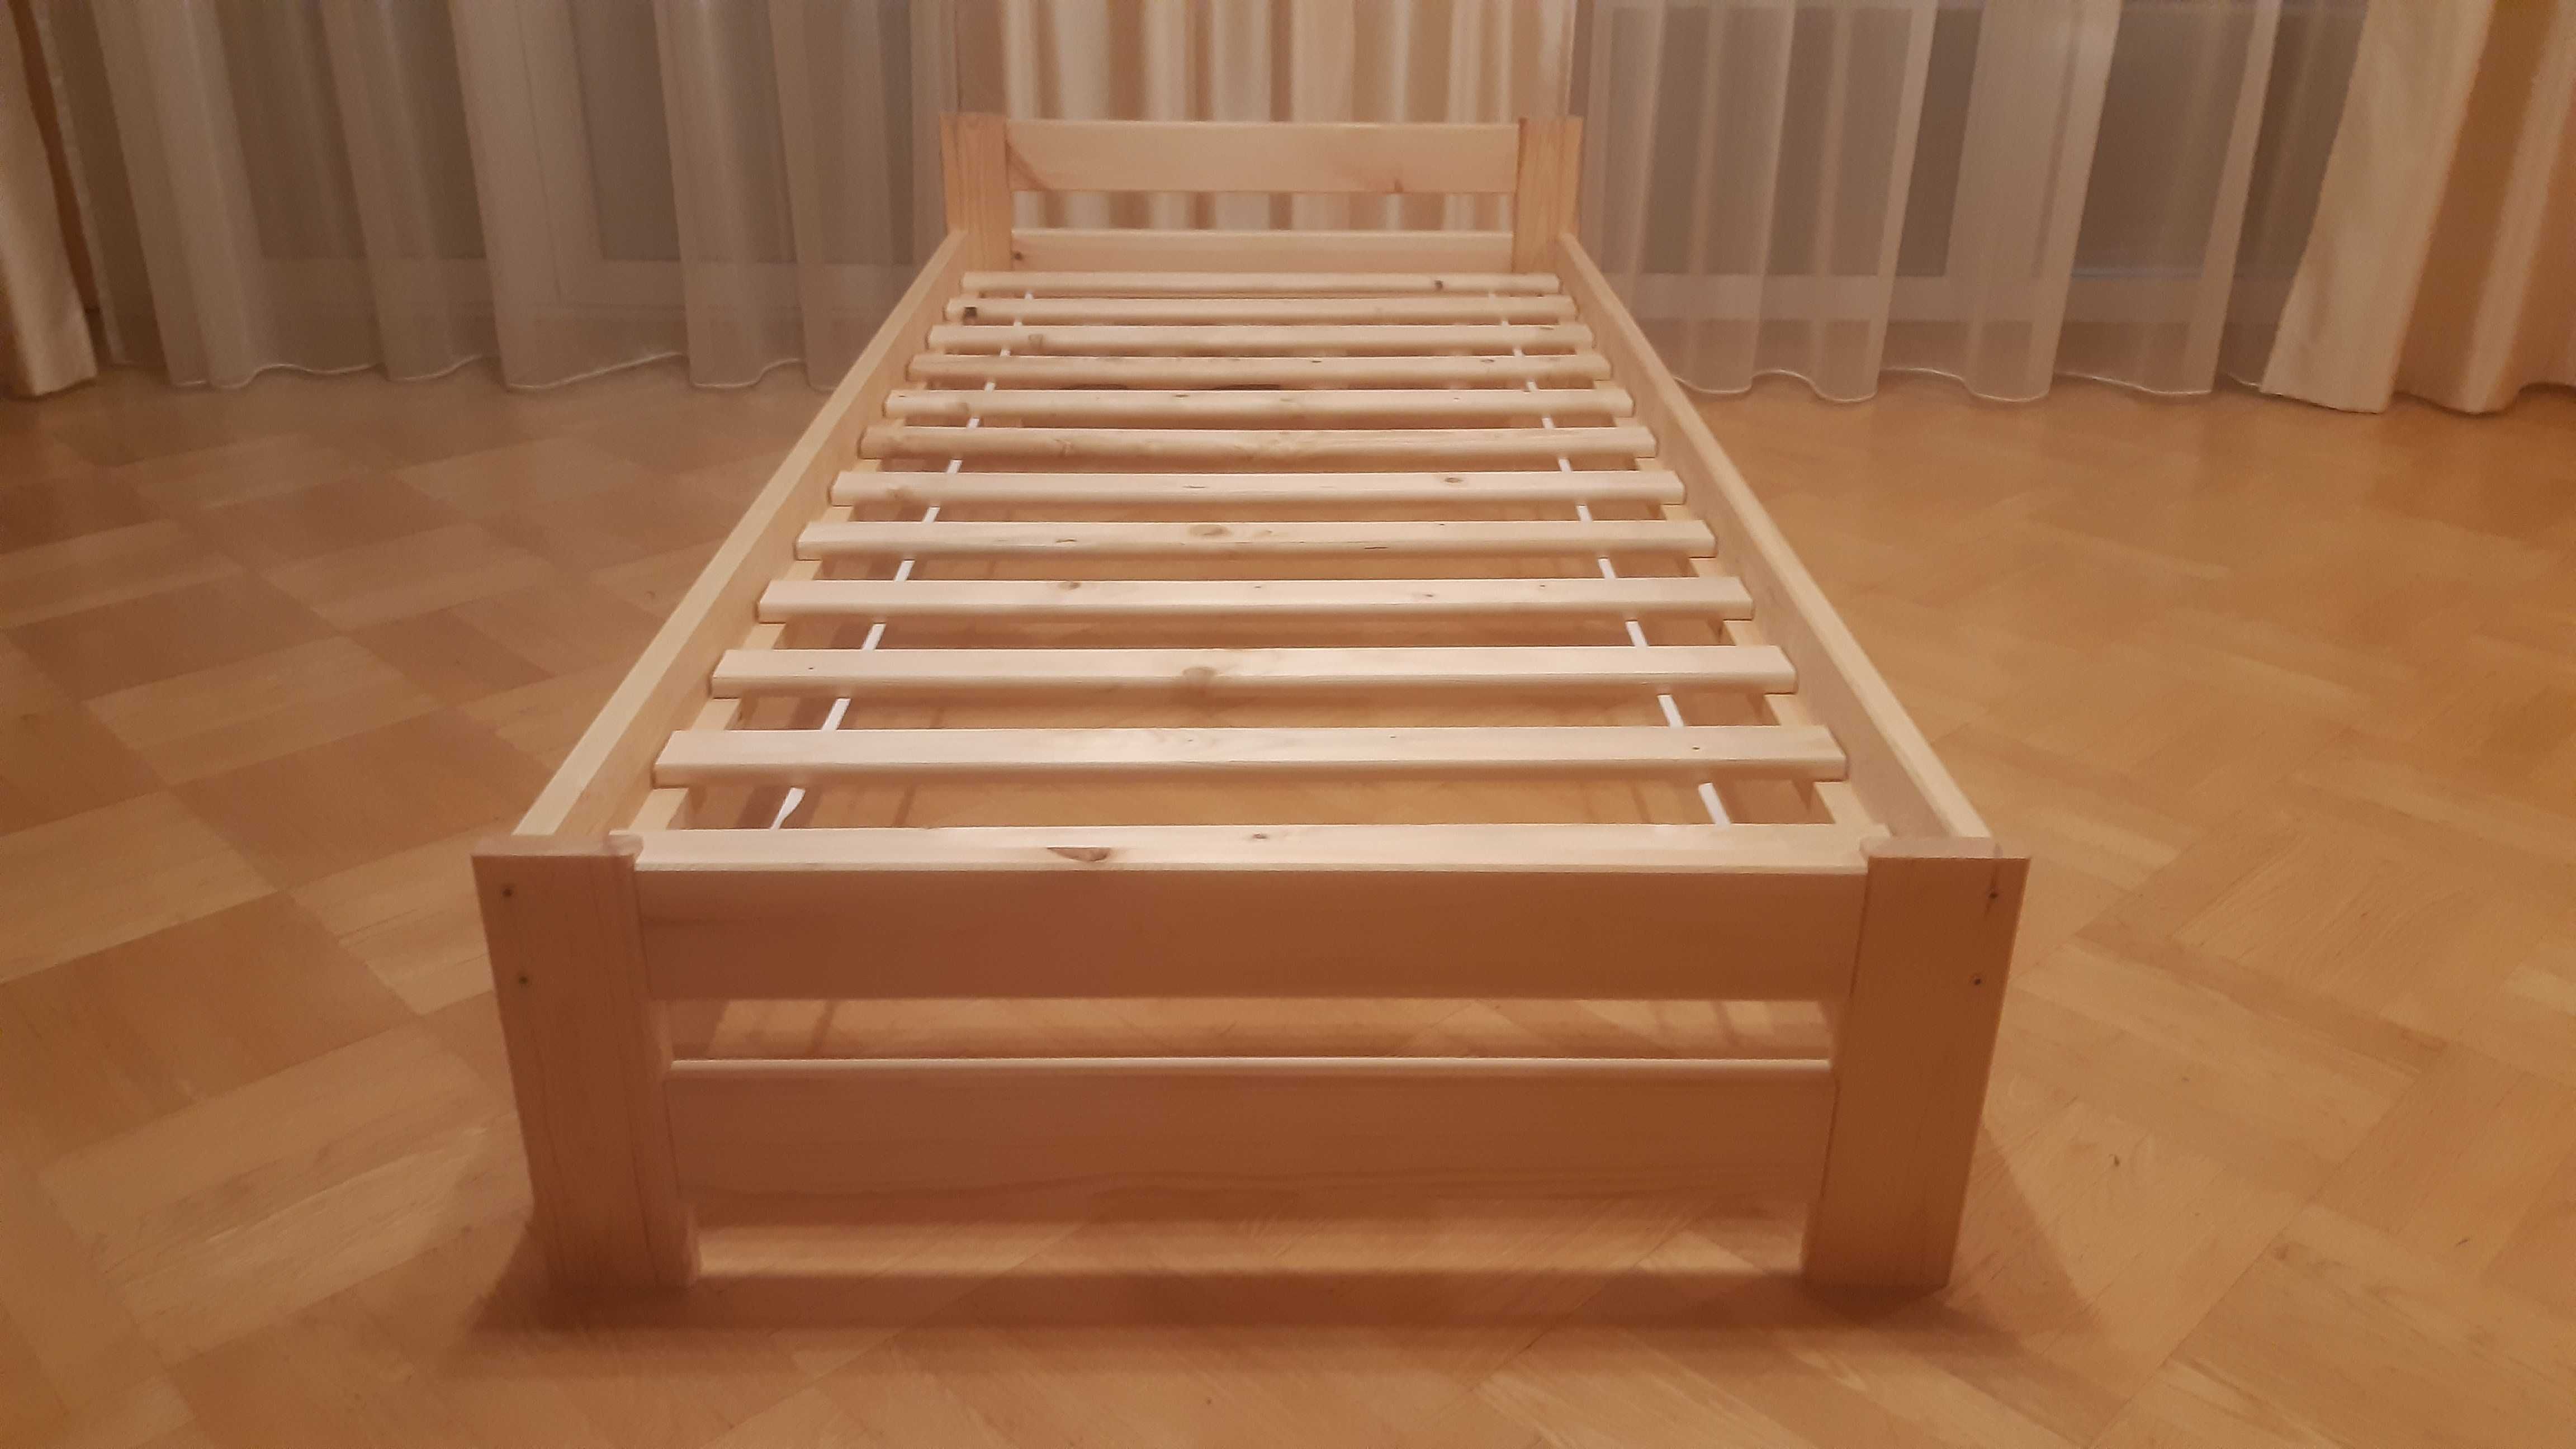 Łóżko drewniane sosnowe wymiary 90x200, 120x200, 140x200, 160x200